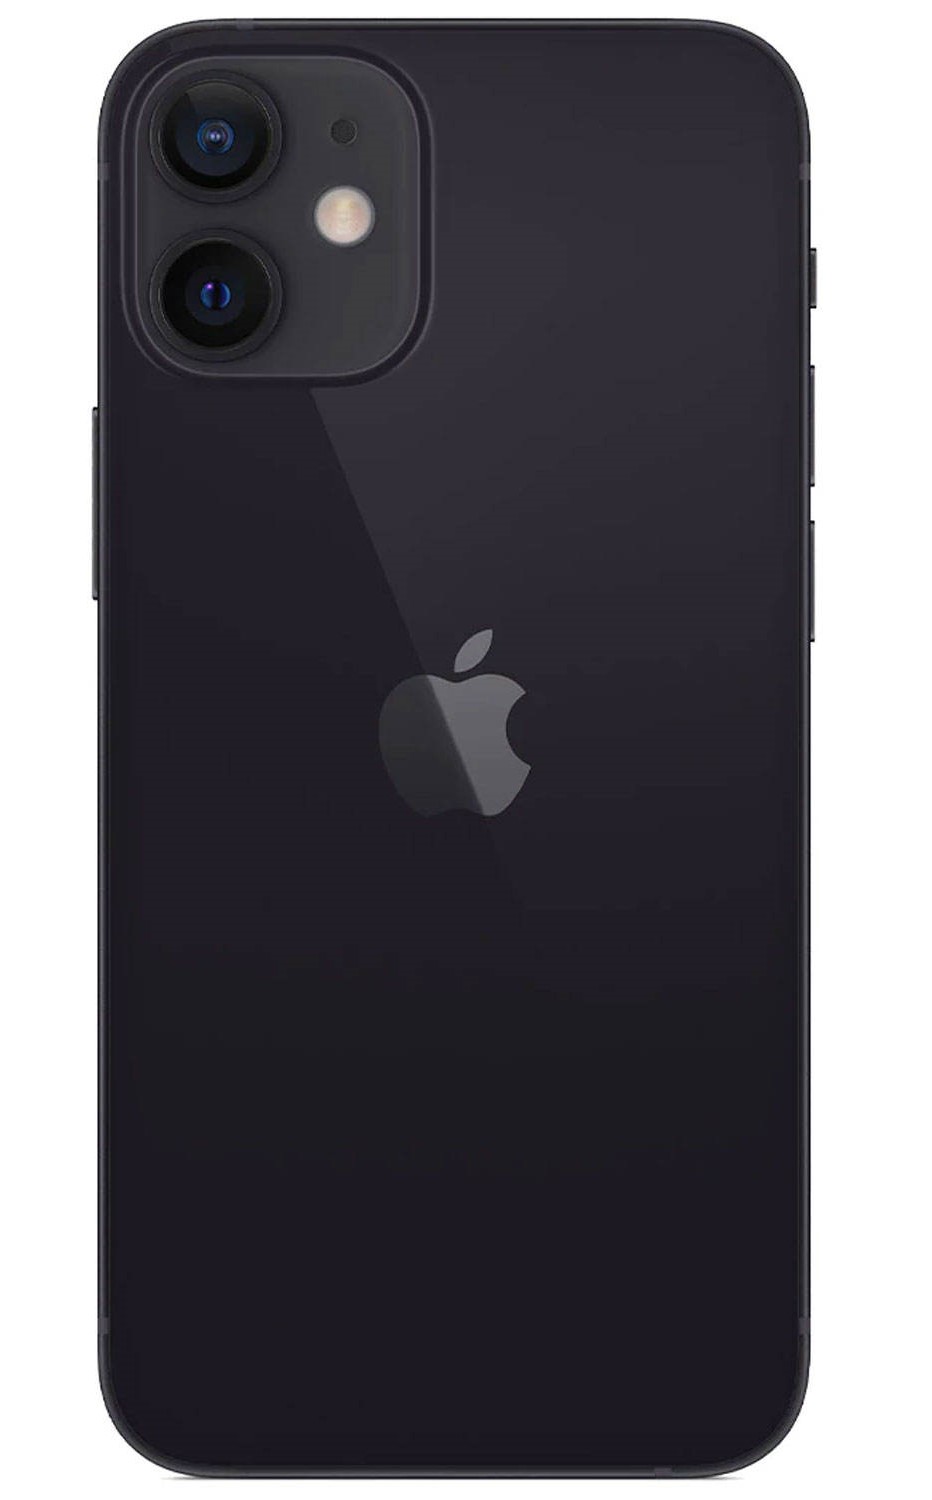 گوشی موبایل اپل مدل iPhone 12 mini ظرفیت 128 گیگابایت thumb 276